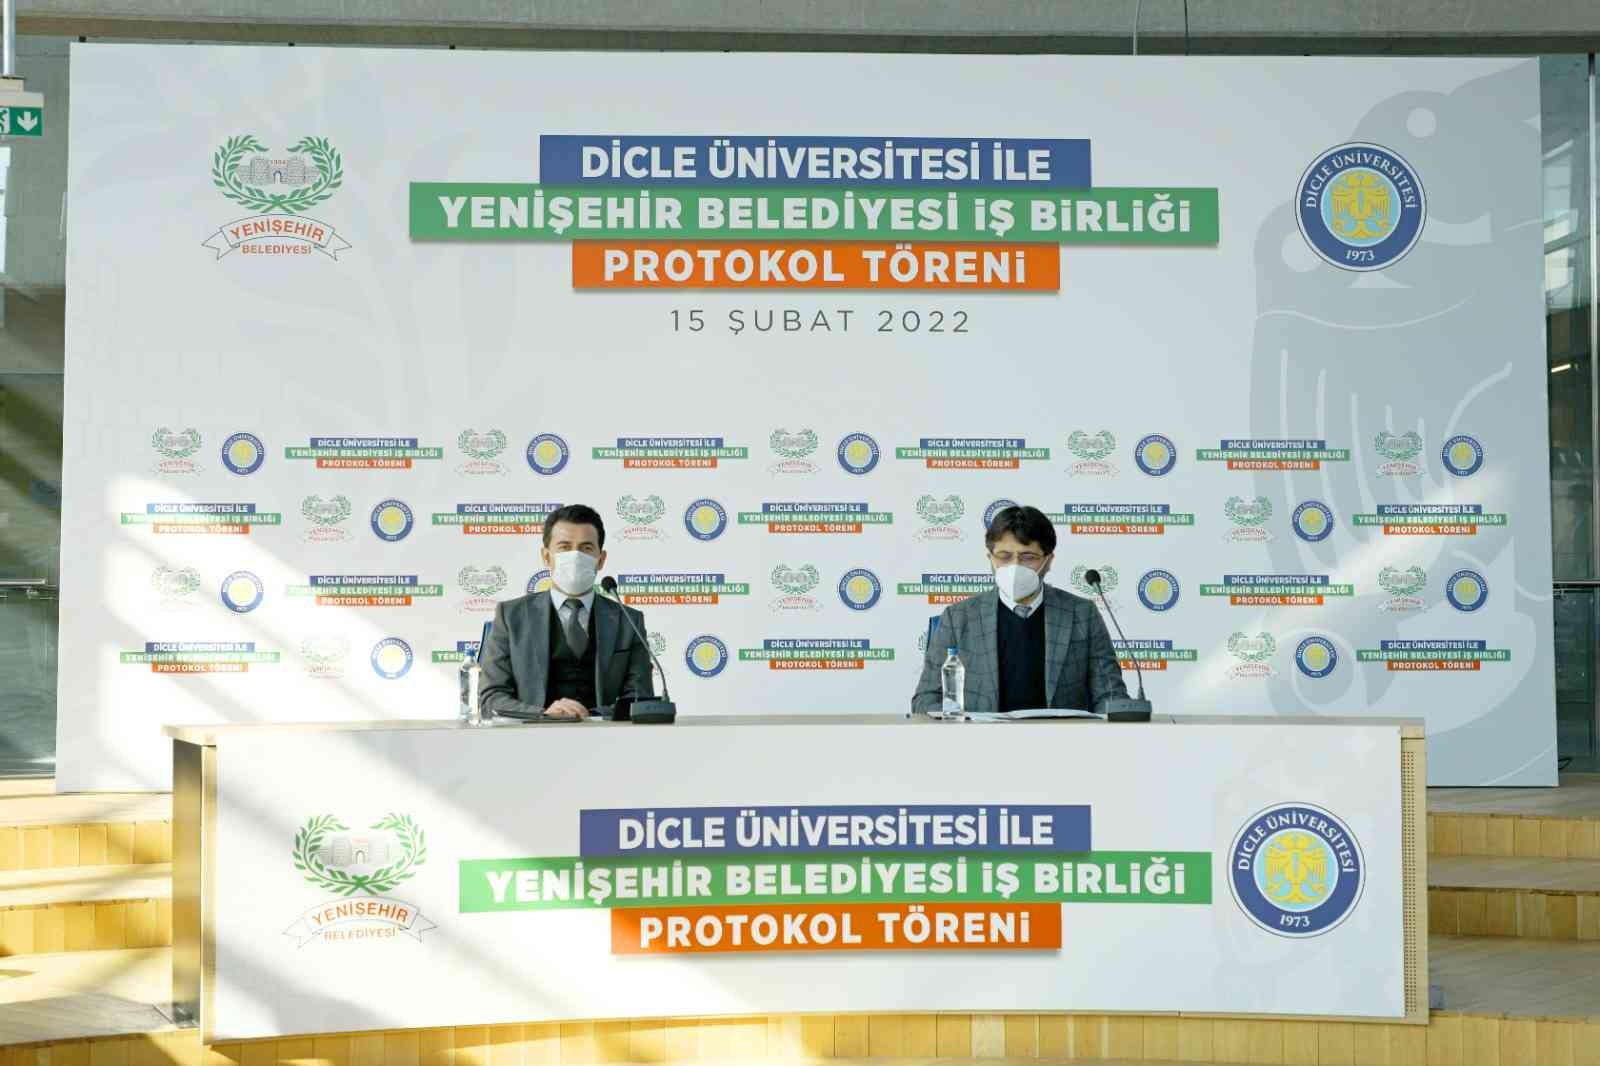 Yenişehir Belediyesi ile Dicle Üniversitesi arasından iş birliği protokolü #diyarbakir